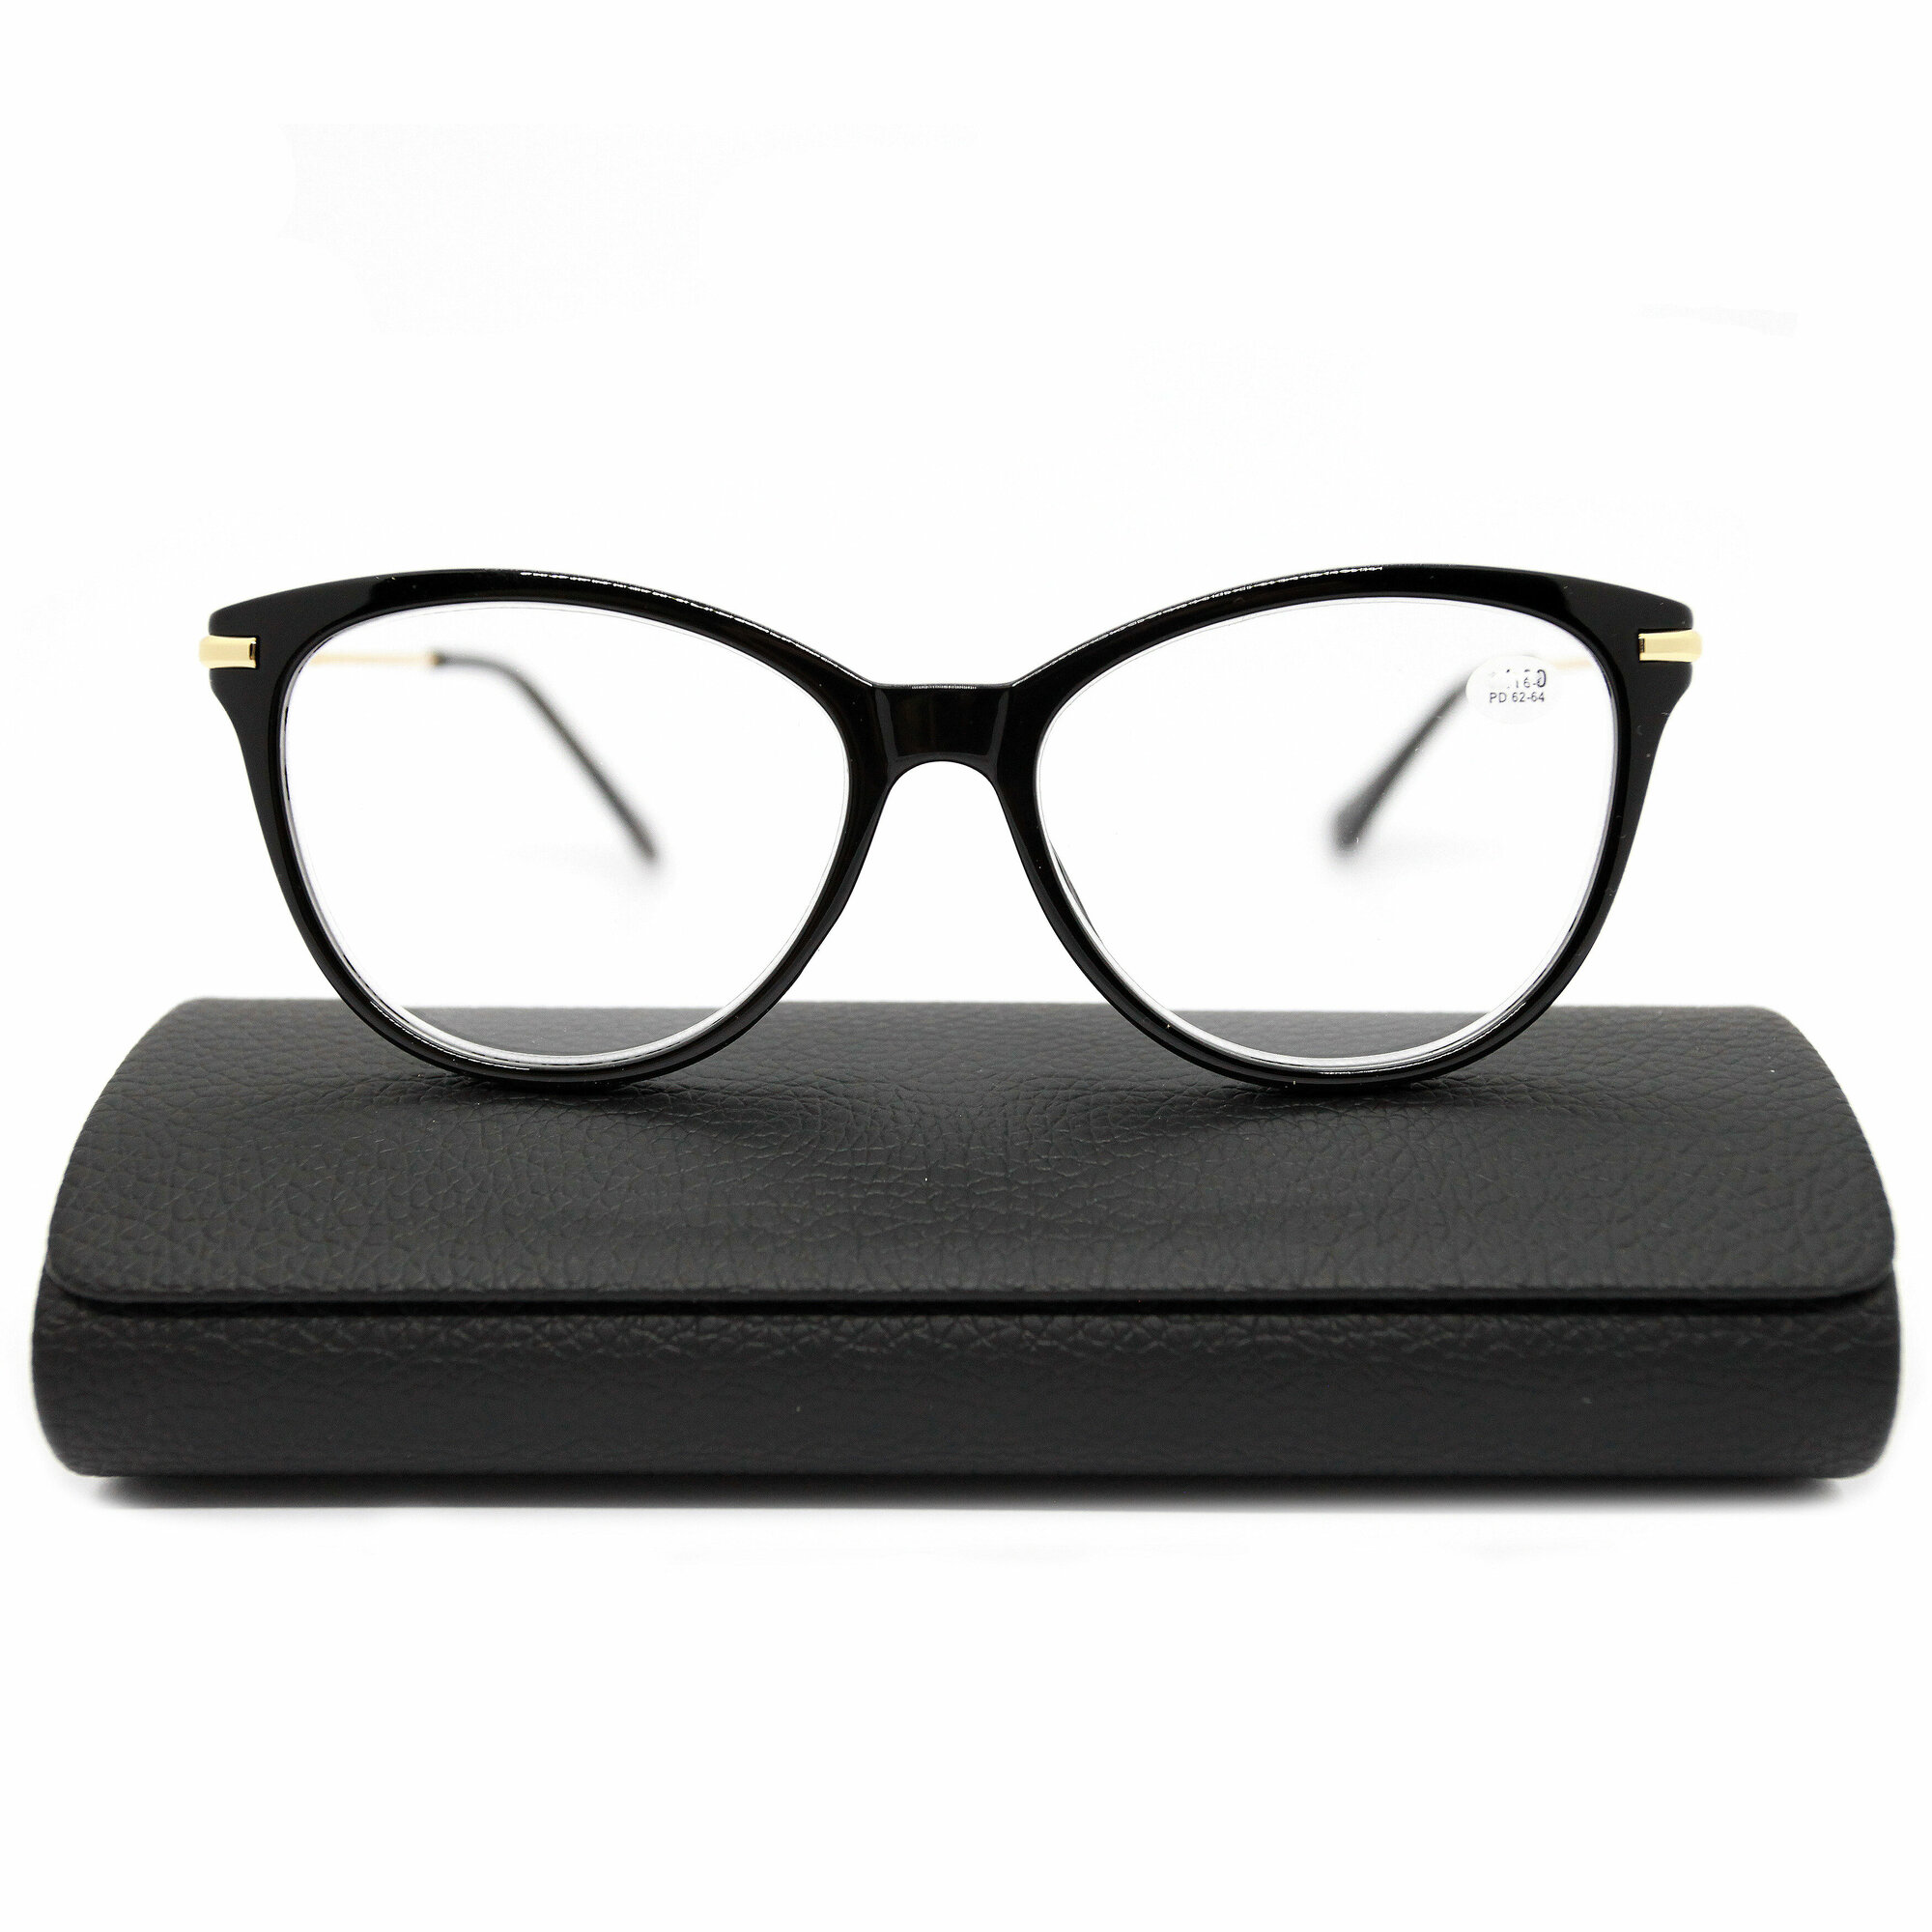 Корригирующие очки женские с металлической дужкой (-3.50) FABIA MONTI 0202, цвет черный, линза пластик, с футляром, РЦ 62-64